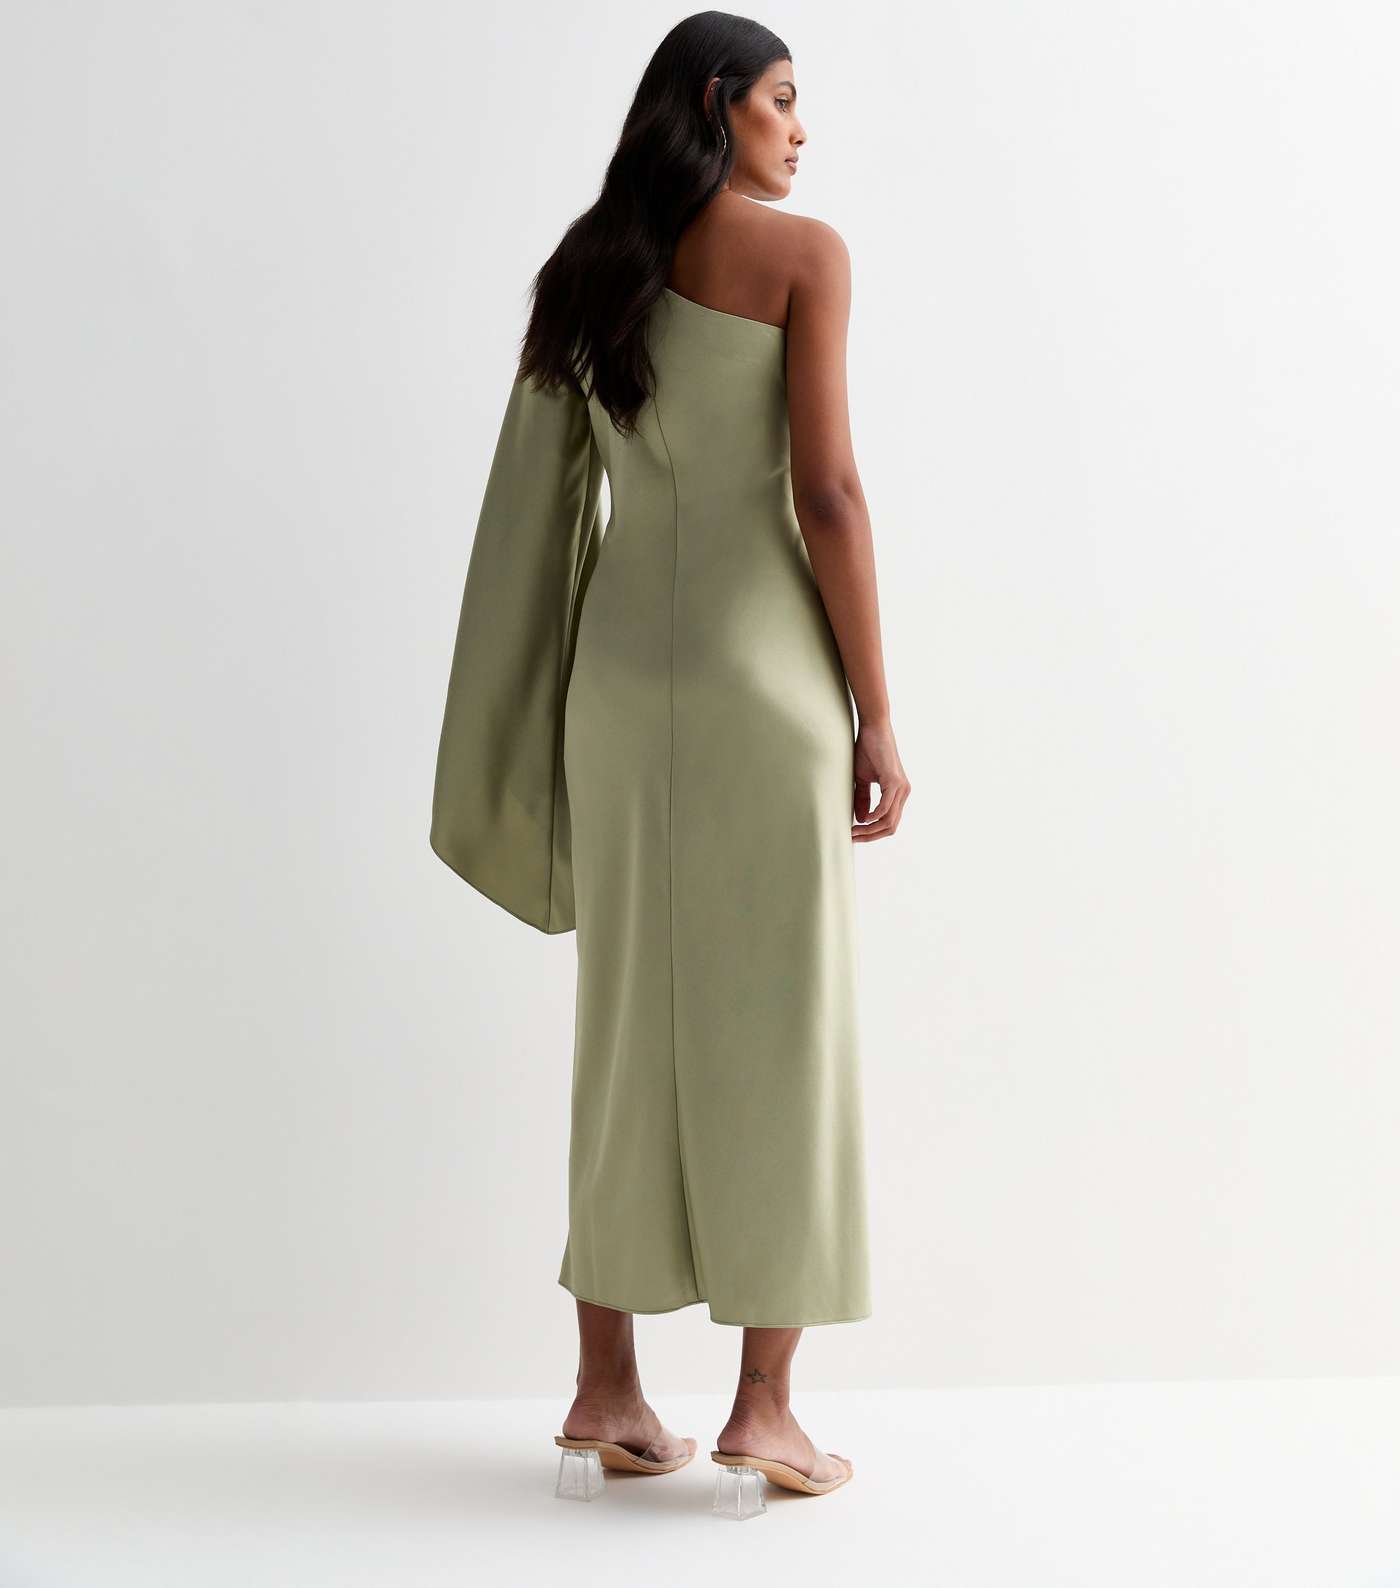 Olive Satin One Shoulder Maxi Dress Image 4